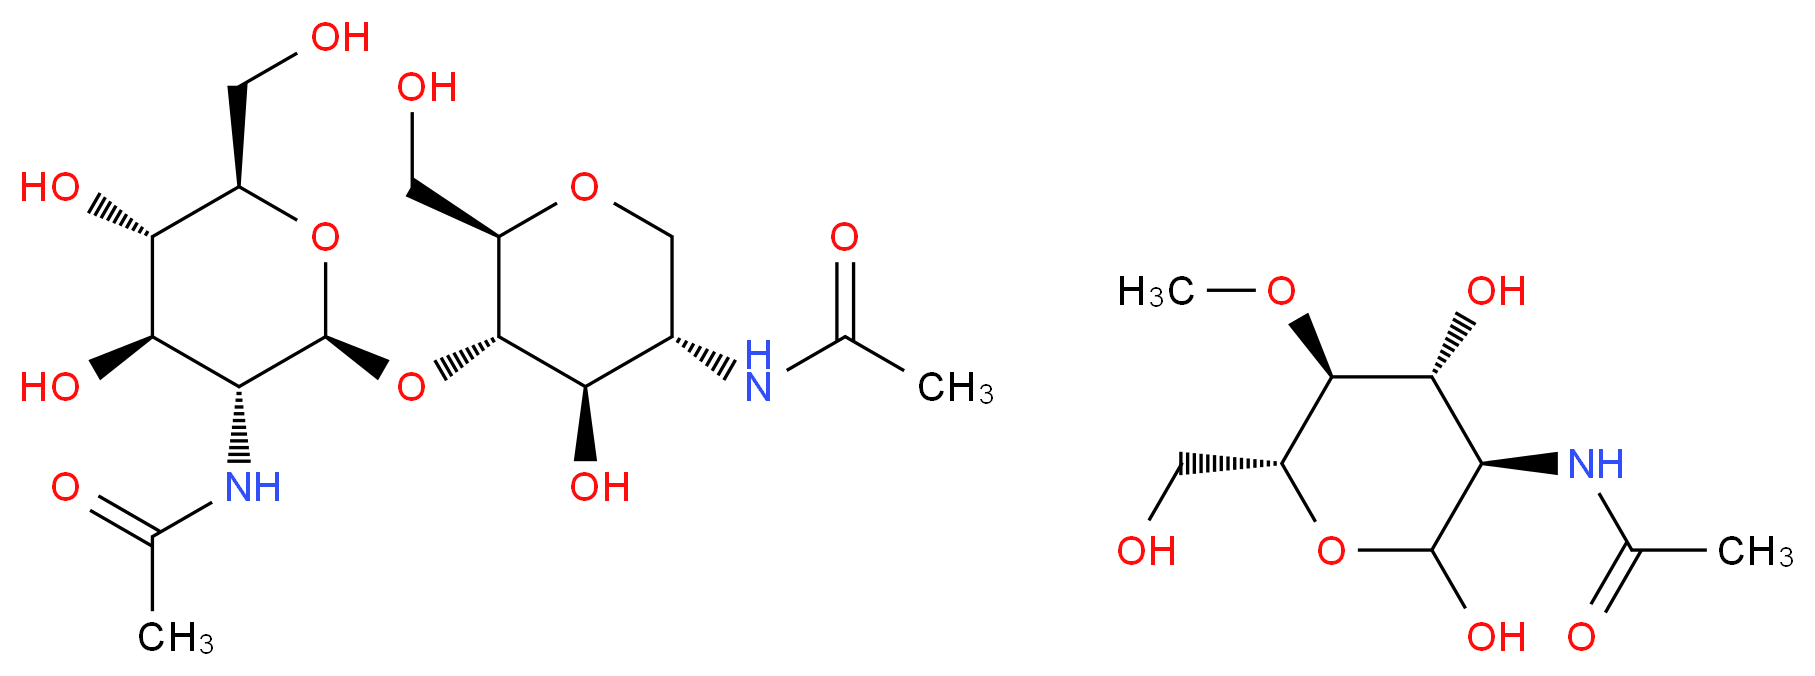 38854-46-5 molecular structure